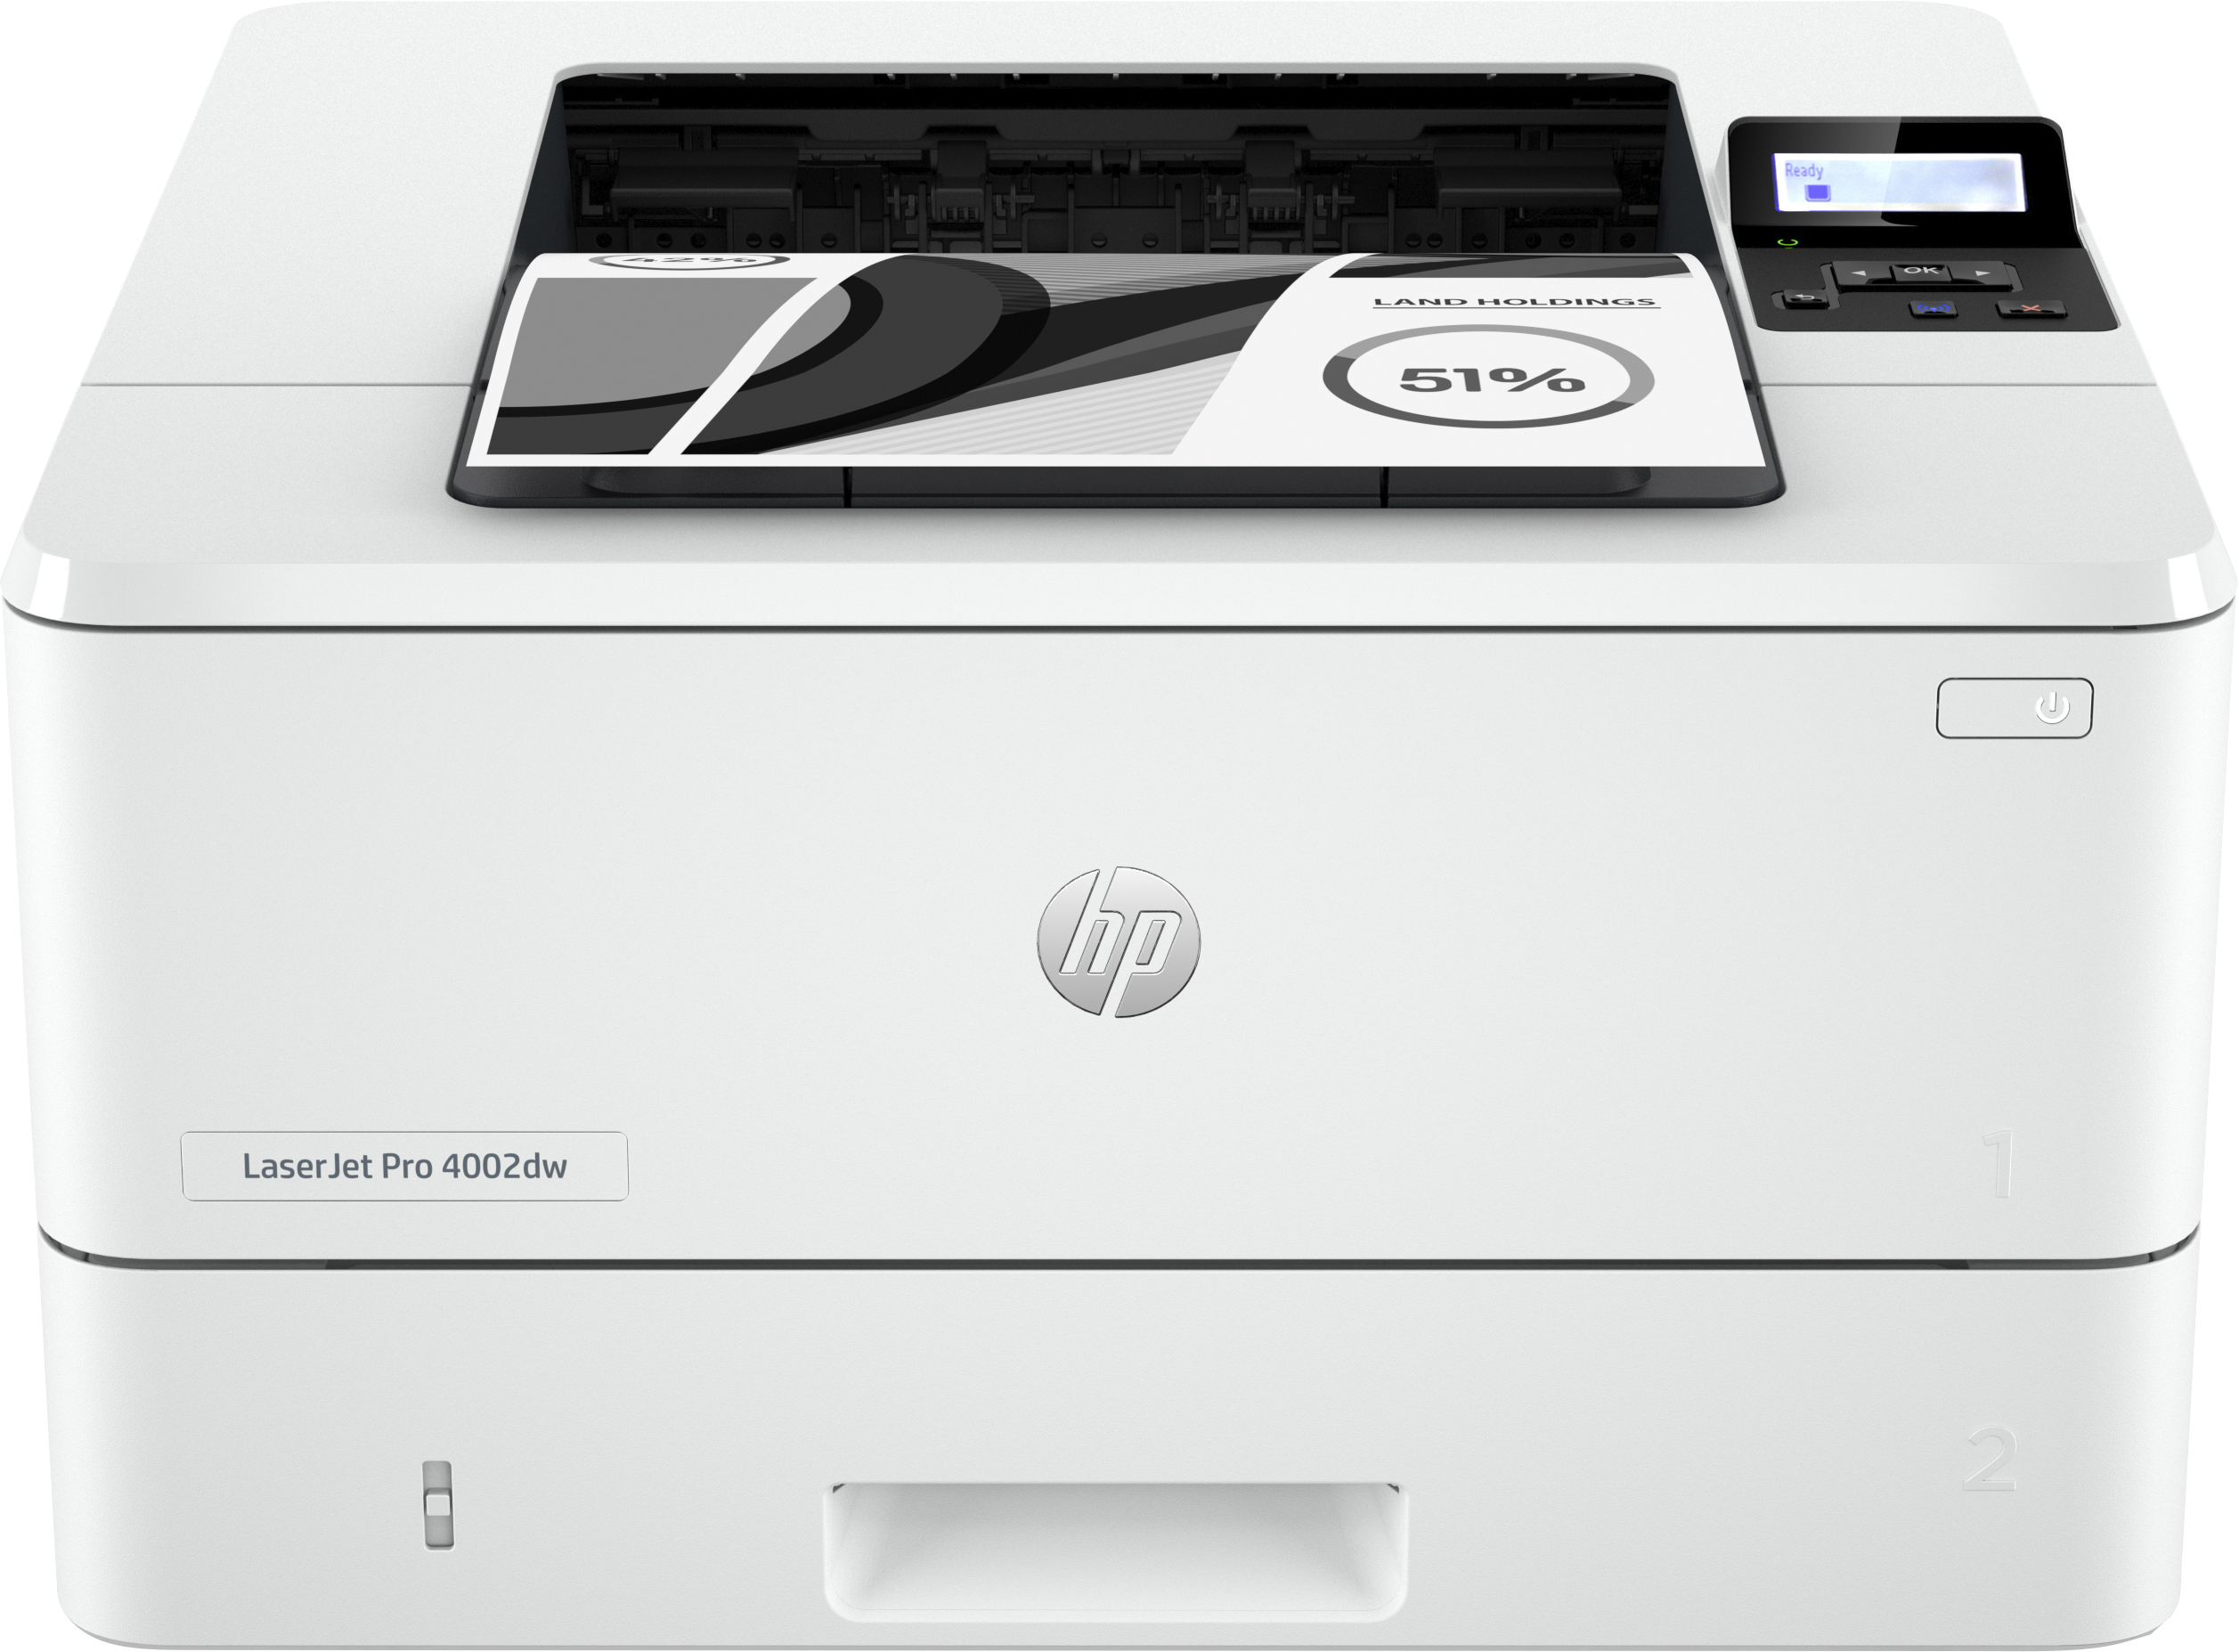 HP LaserJet Pro Imprimante 4002dw, Imprimer, Impression recto-verso. Vitesses de première page imprimée. Taille compacte. Éco-énergétique. Sécurité renforcée. Wi-Fi double fréquence